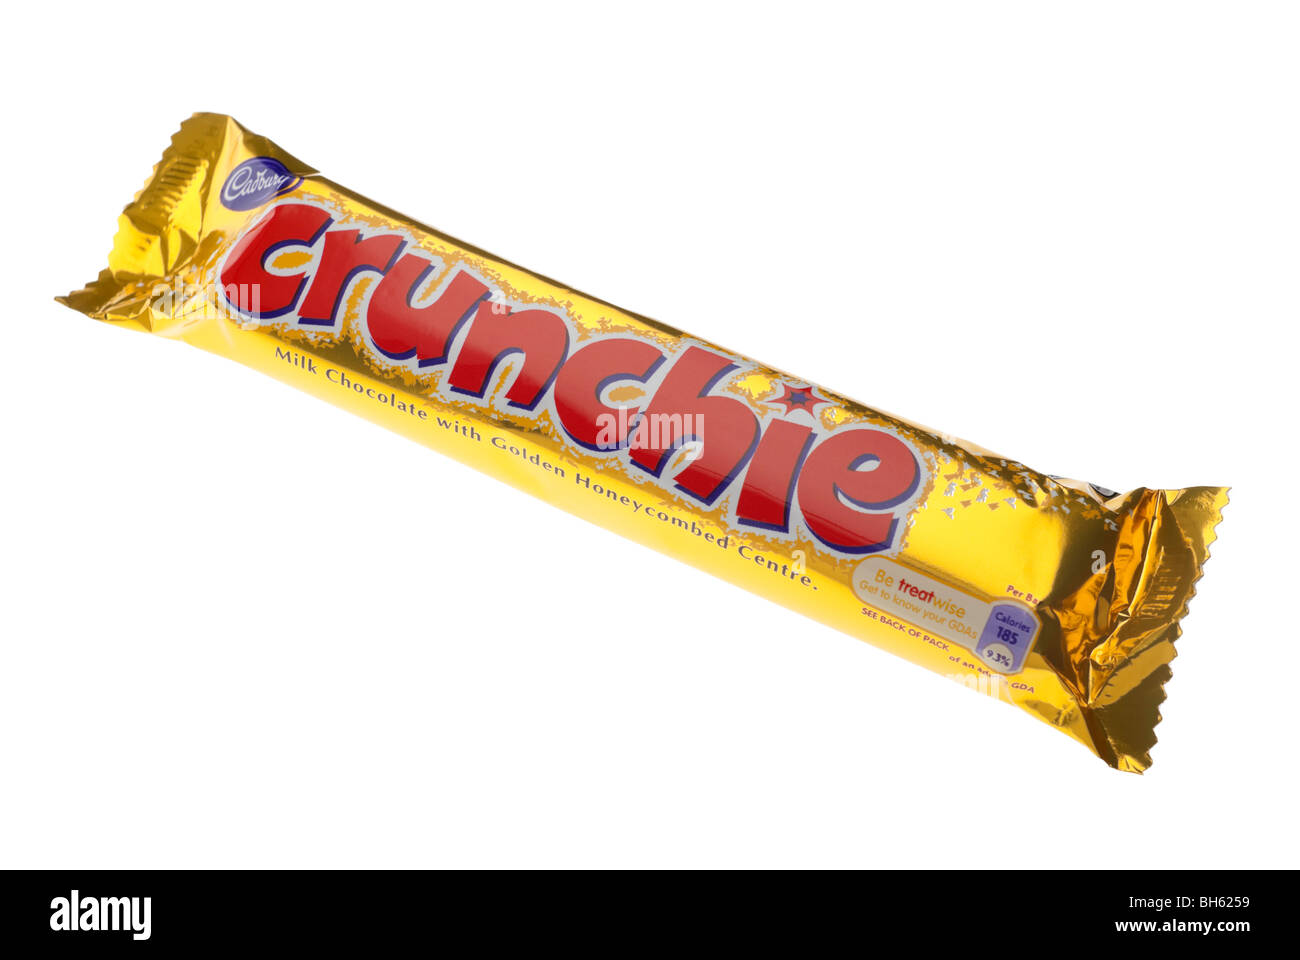 Cadbury Crunchie Chocolate Bar Stock Photo